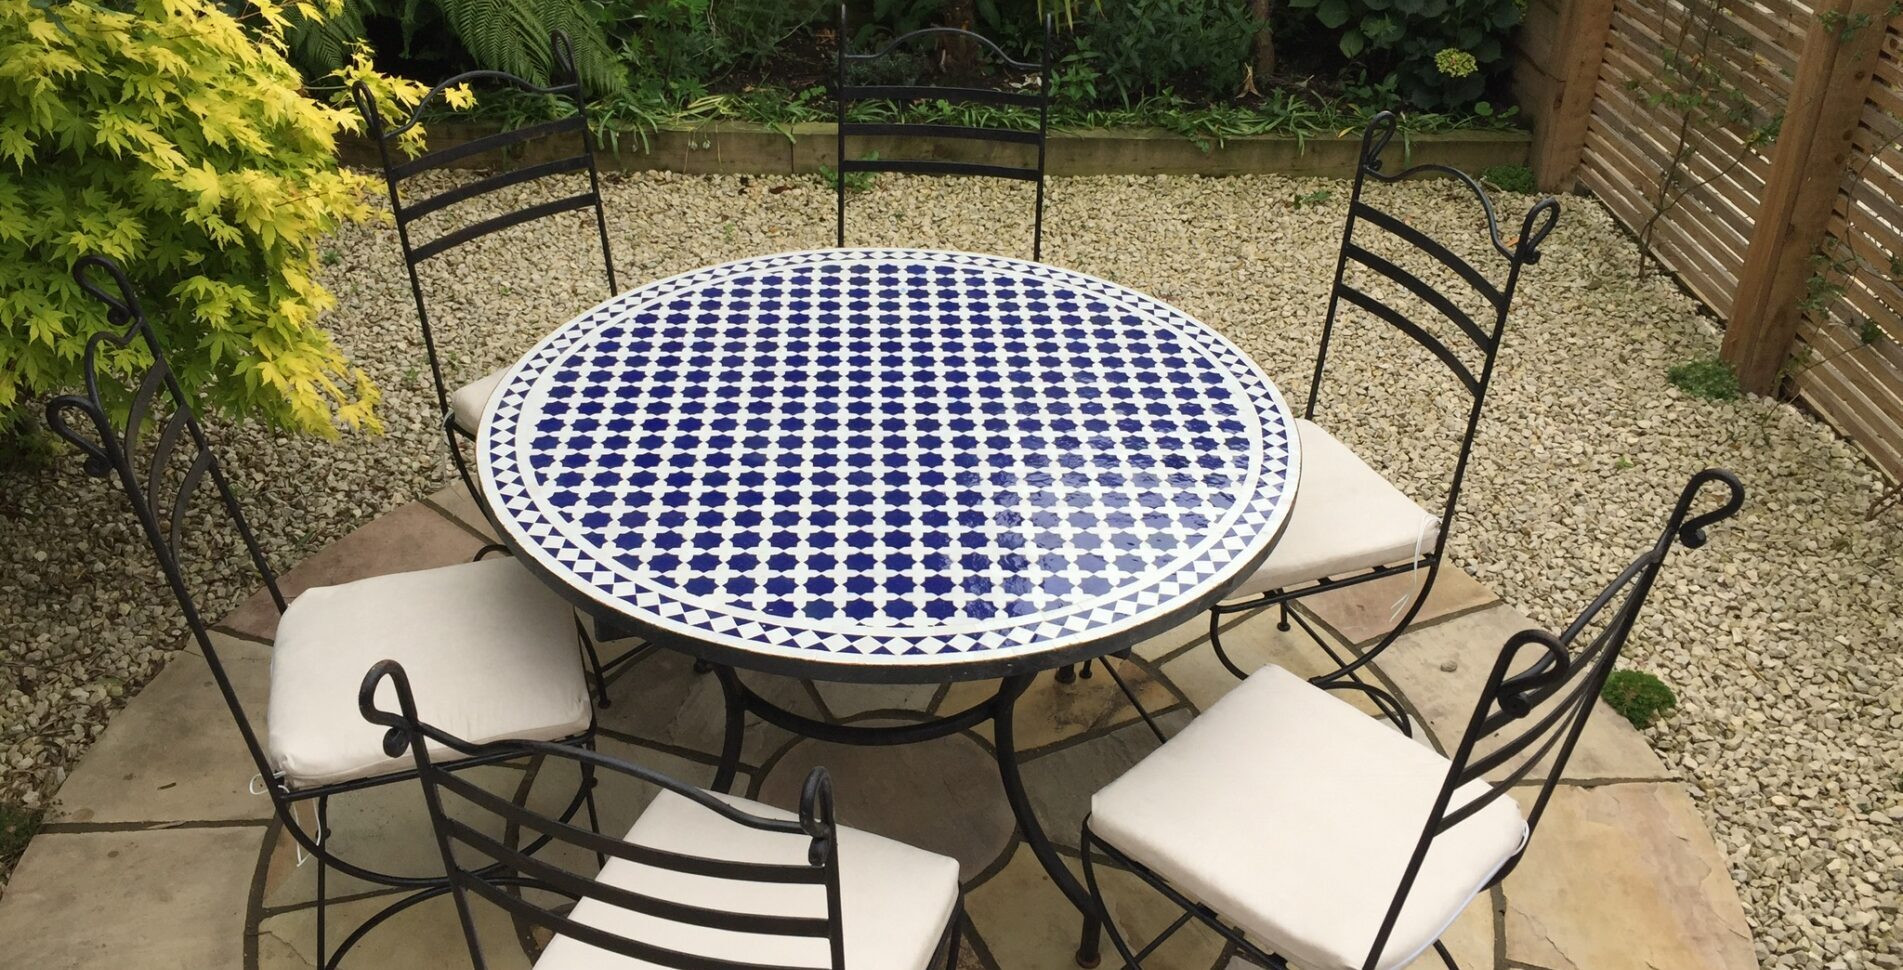 Tavole Calde Ltd. - Mediterranean Mosaic Tables